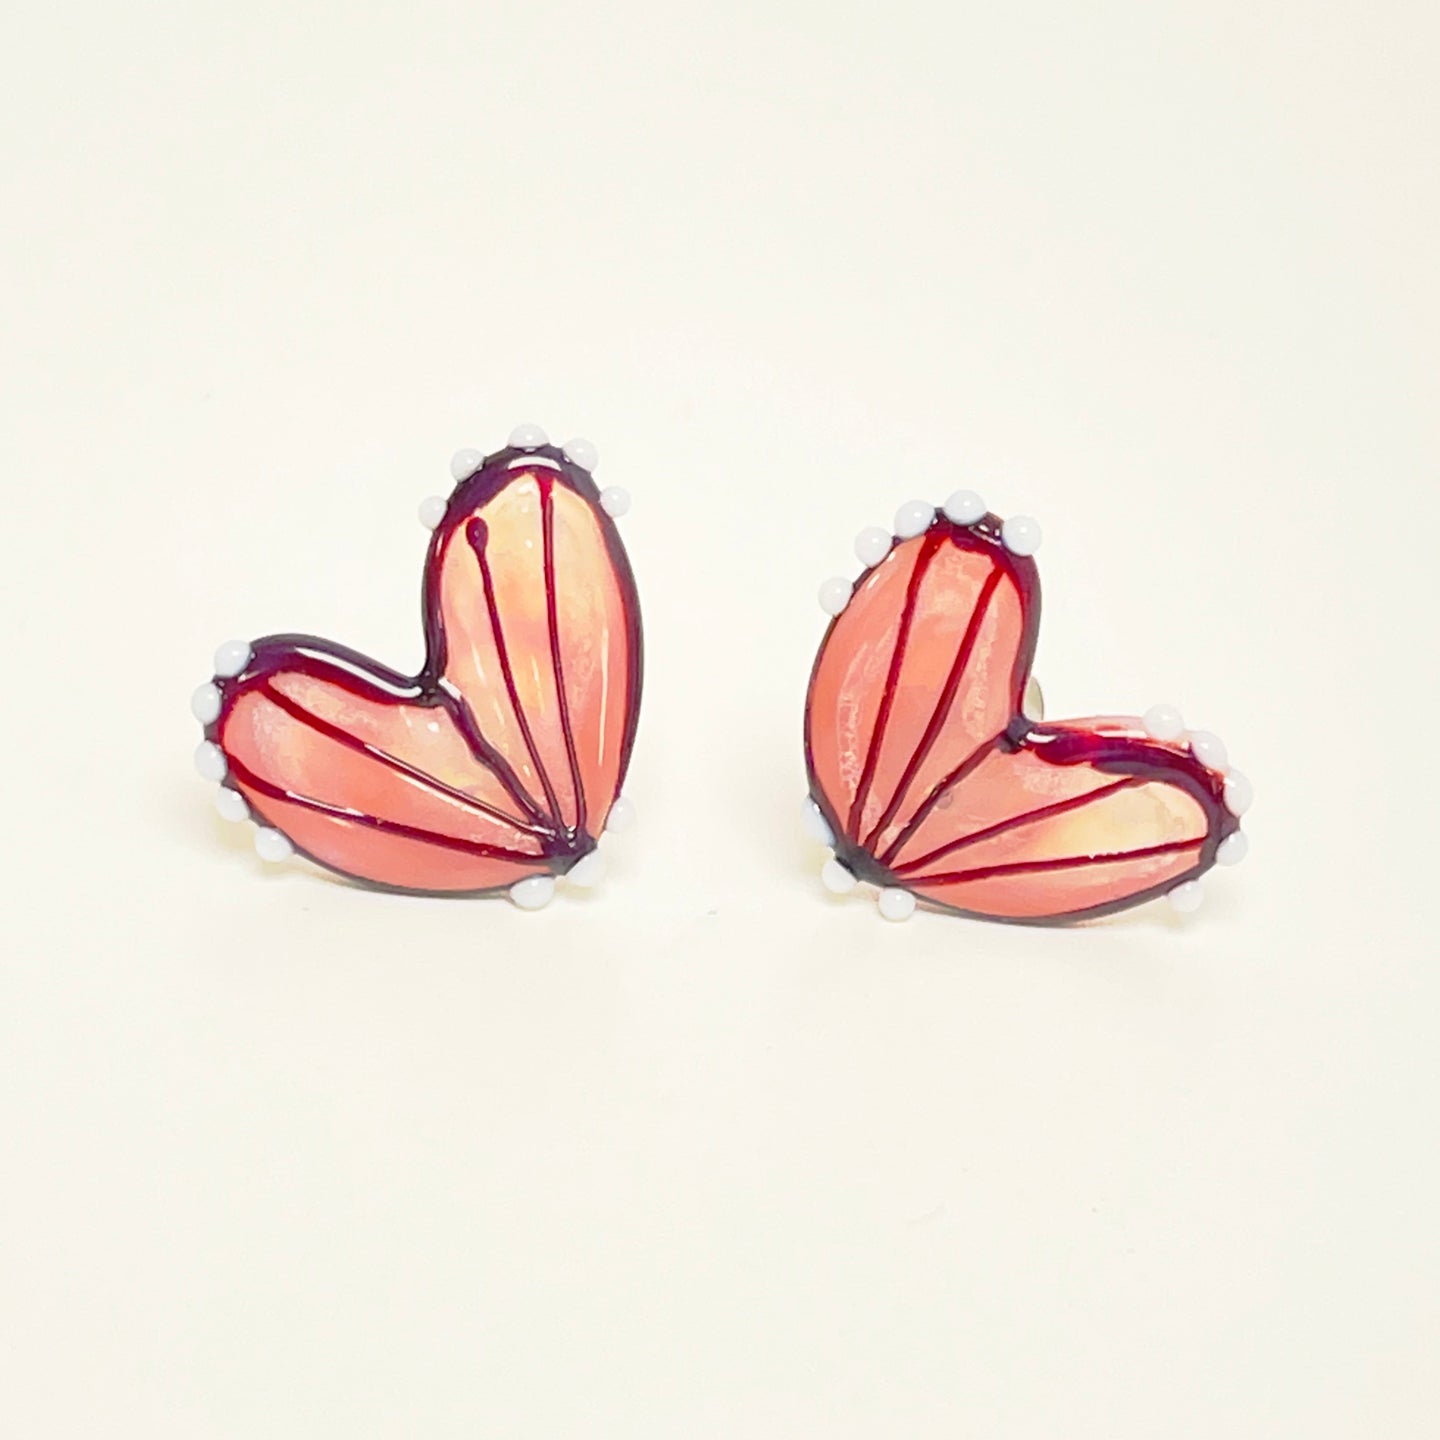 Glass butterfly wings stud earrings - pink